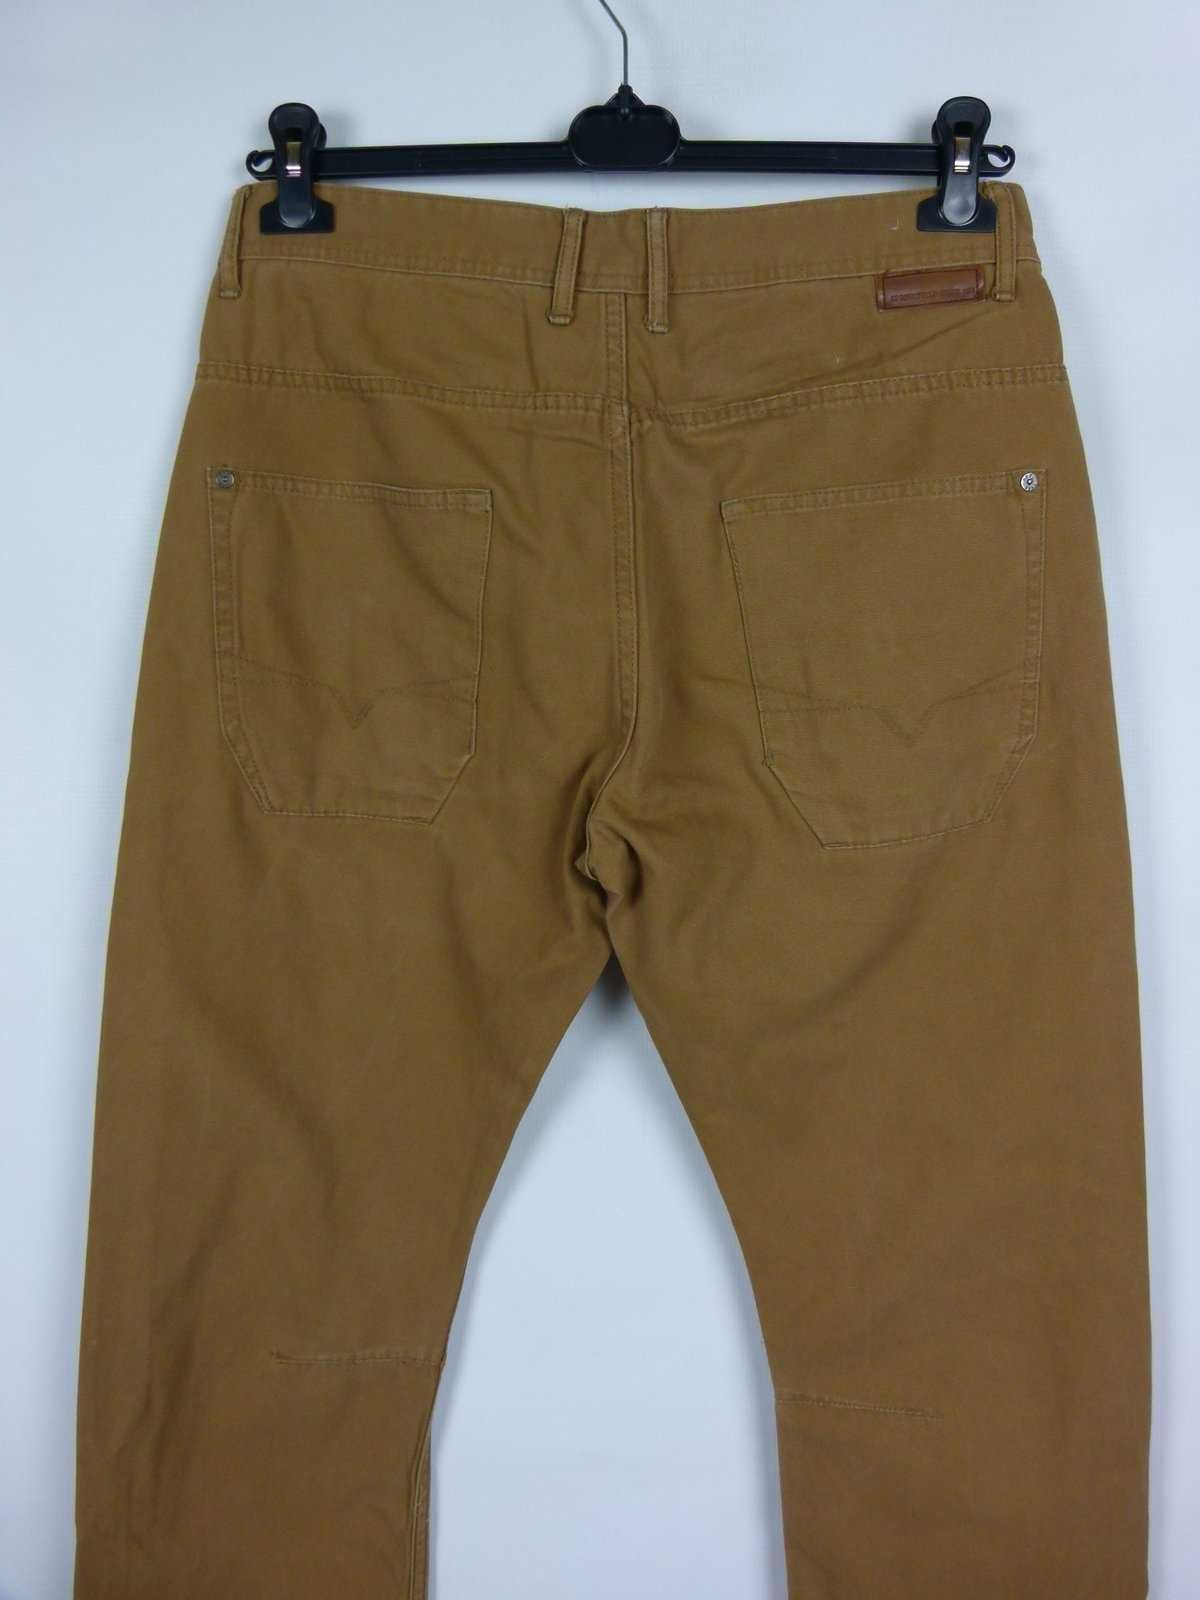 Springfield spodnie męskie bawełna UK 32 / EUR 42